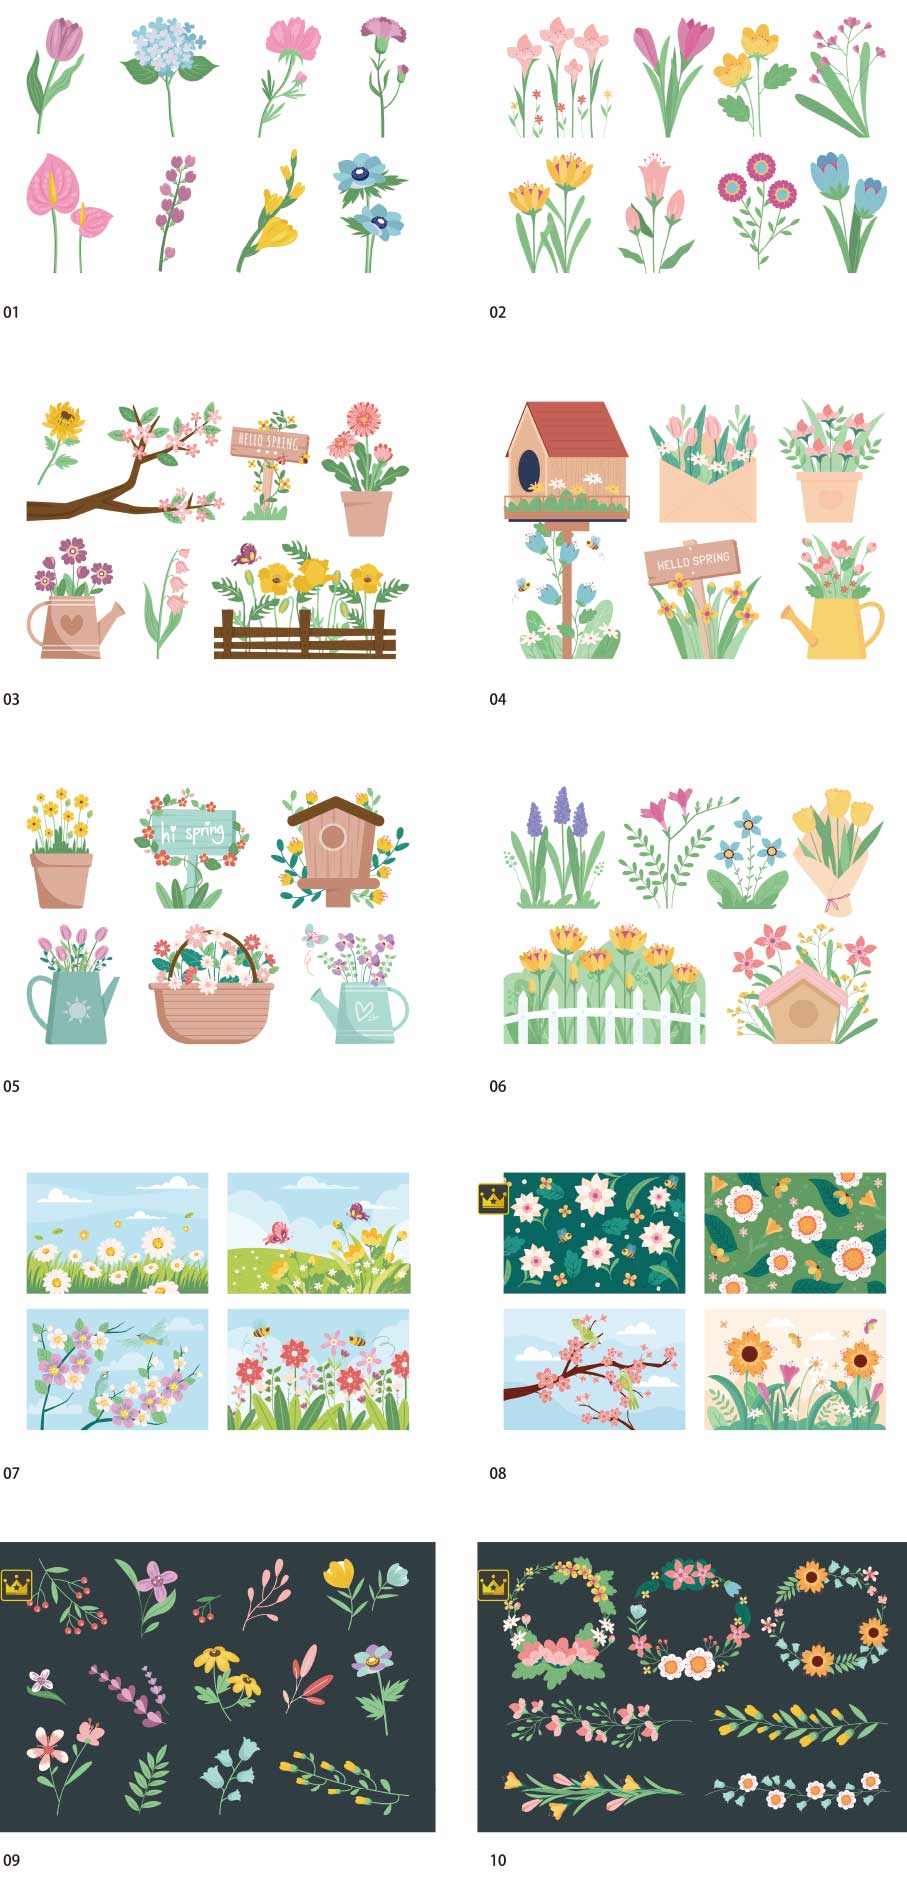 bộ sưu tập minh họa hoa mùa xuân